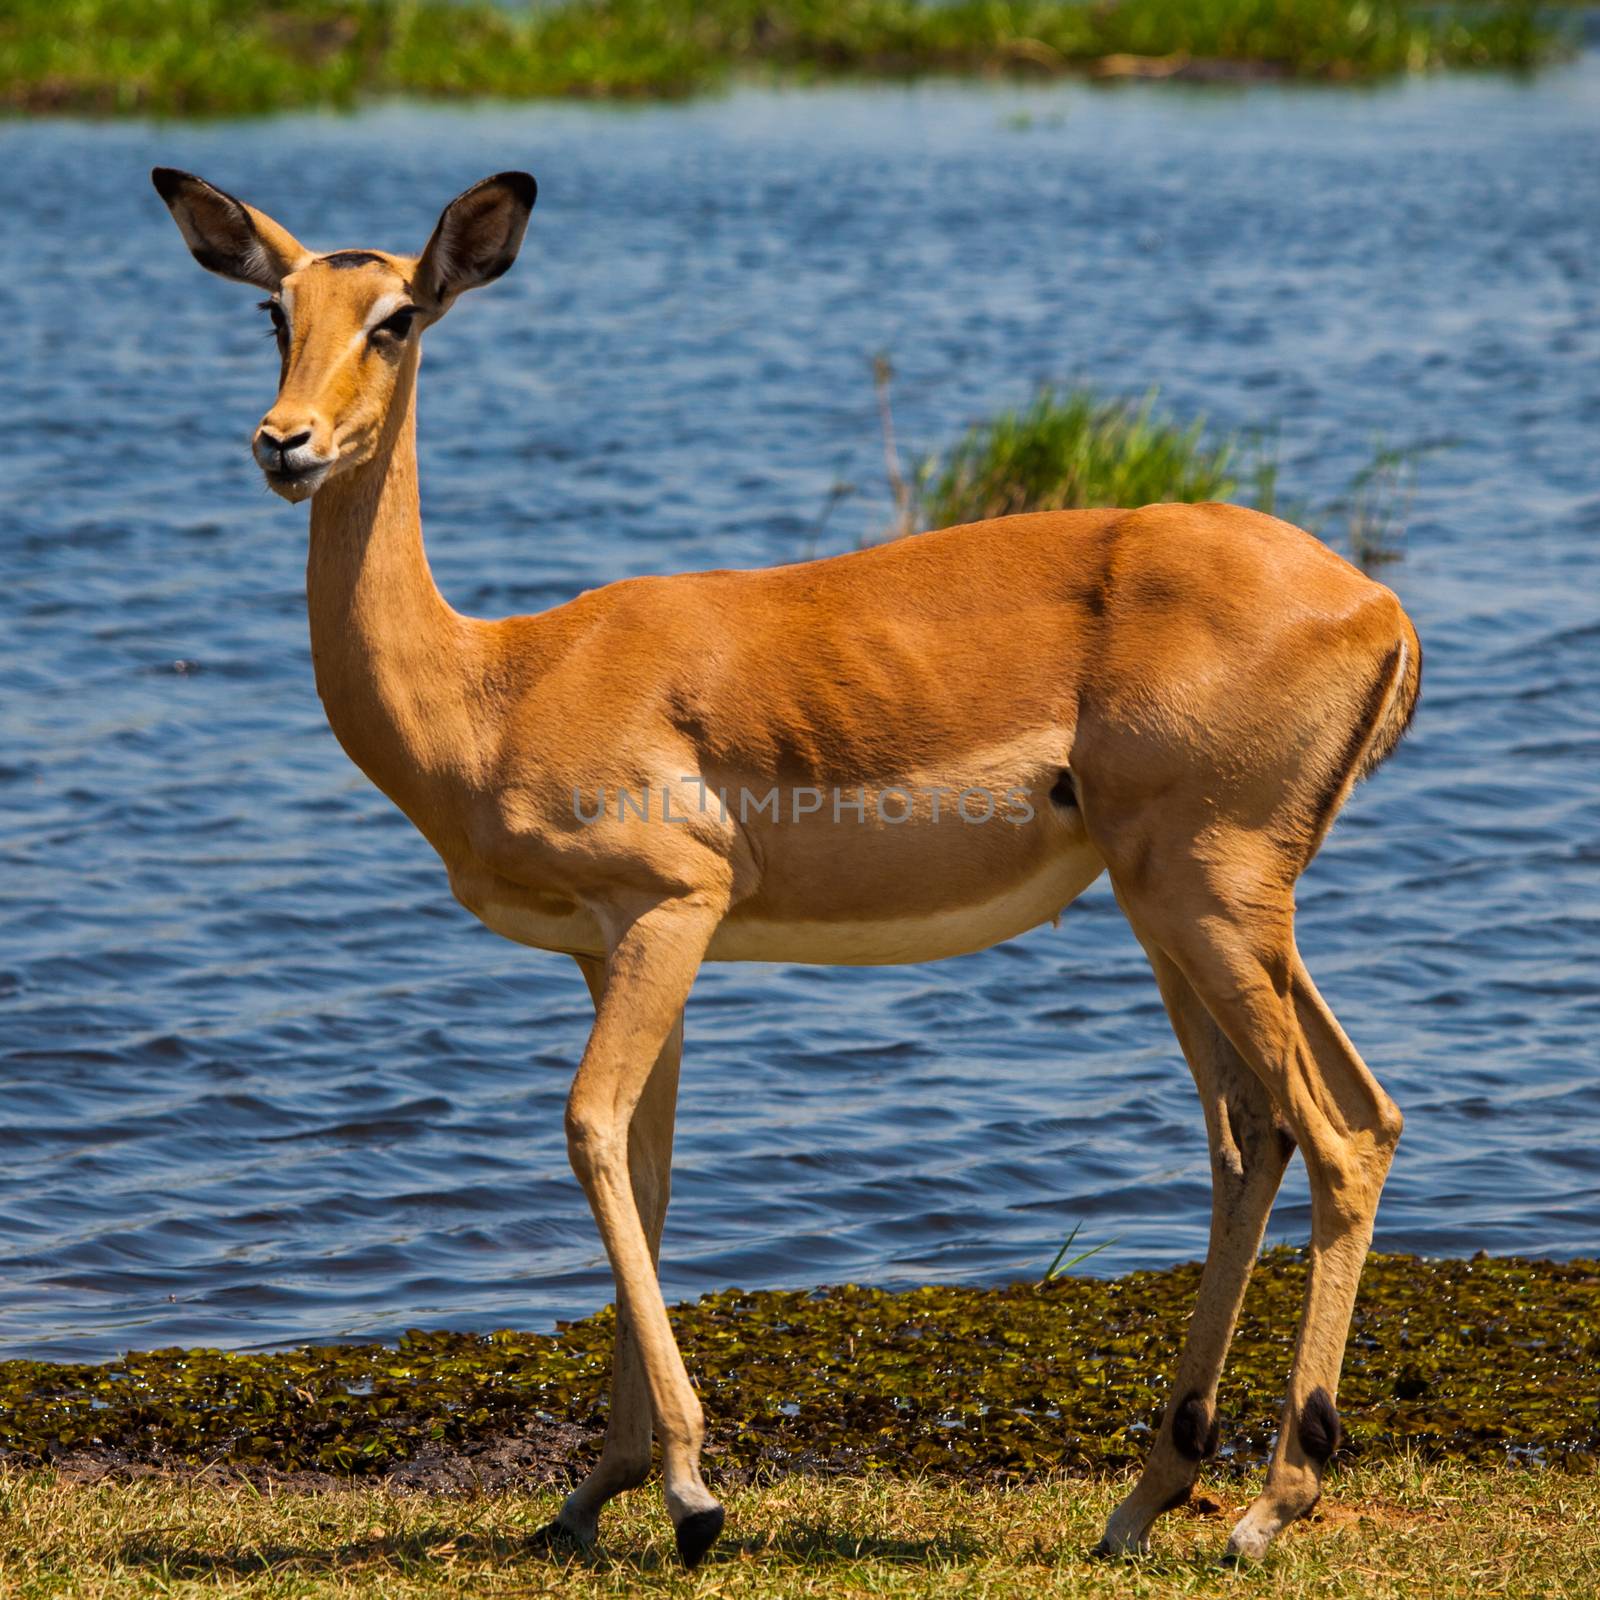 Young impala on safari game drive (Okavango region, Botswana)